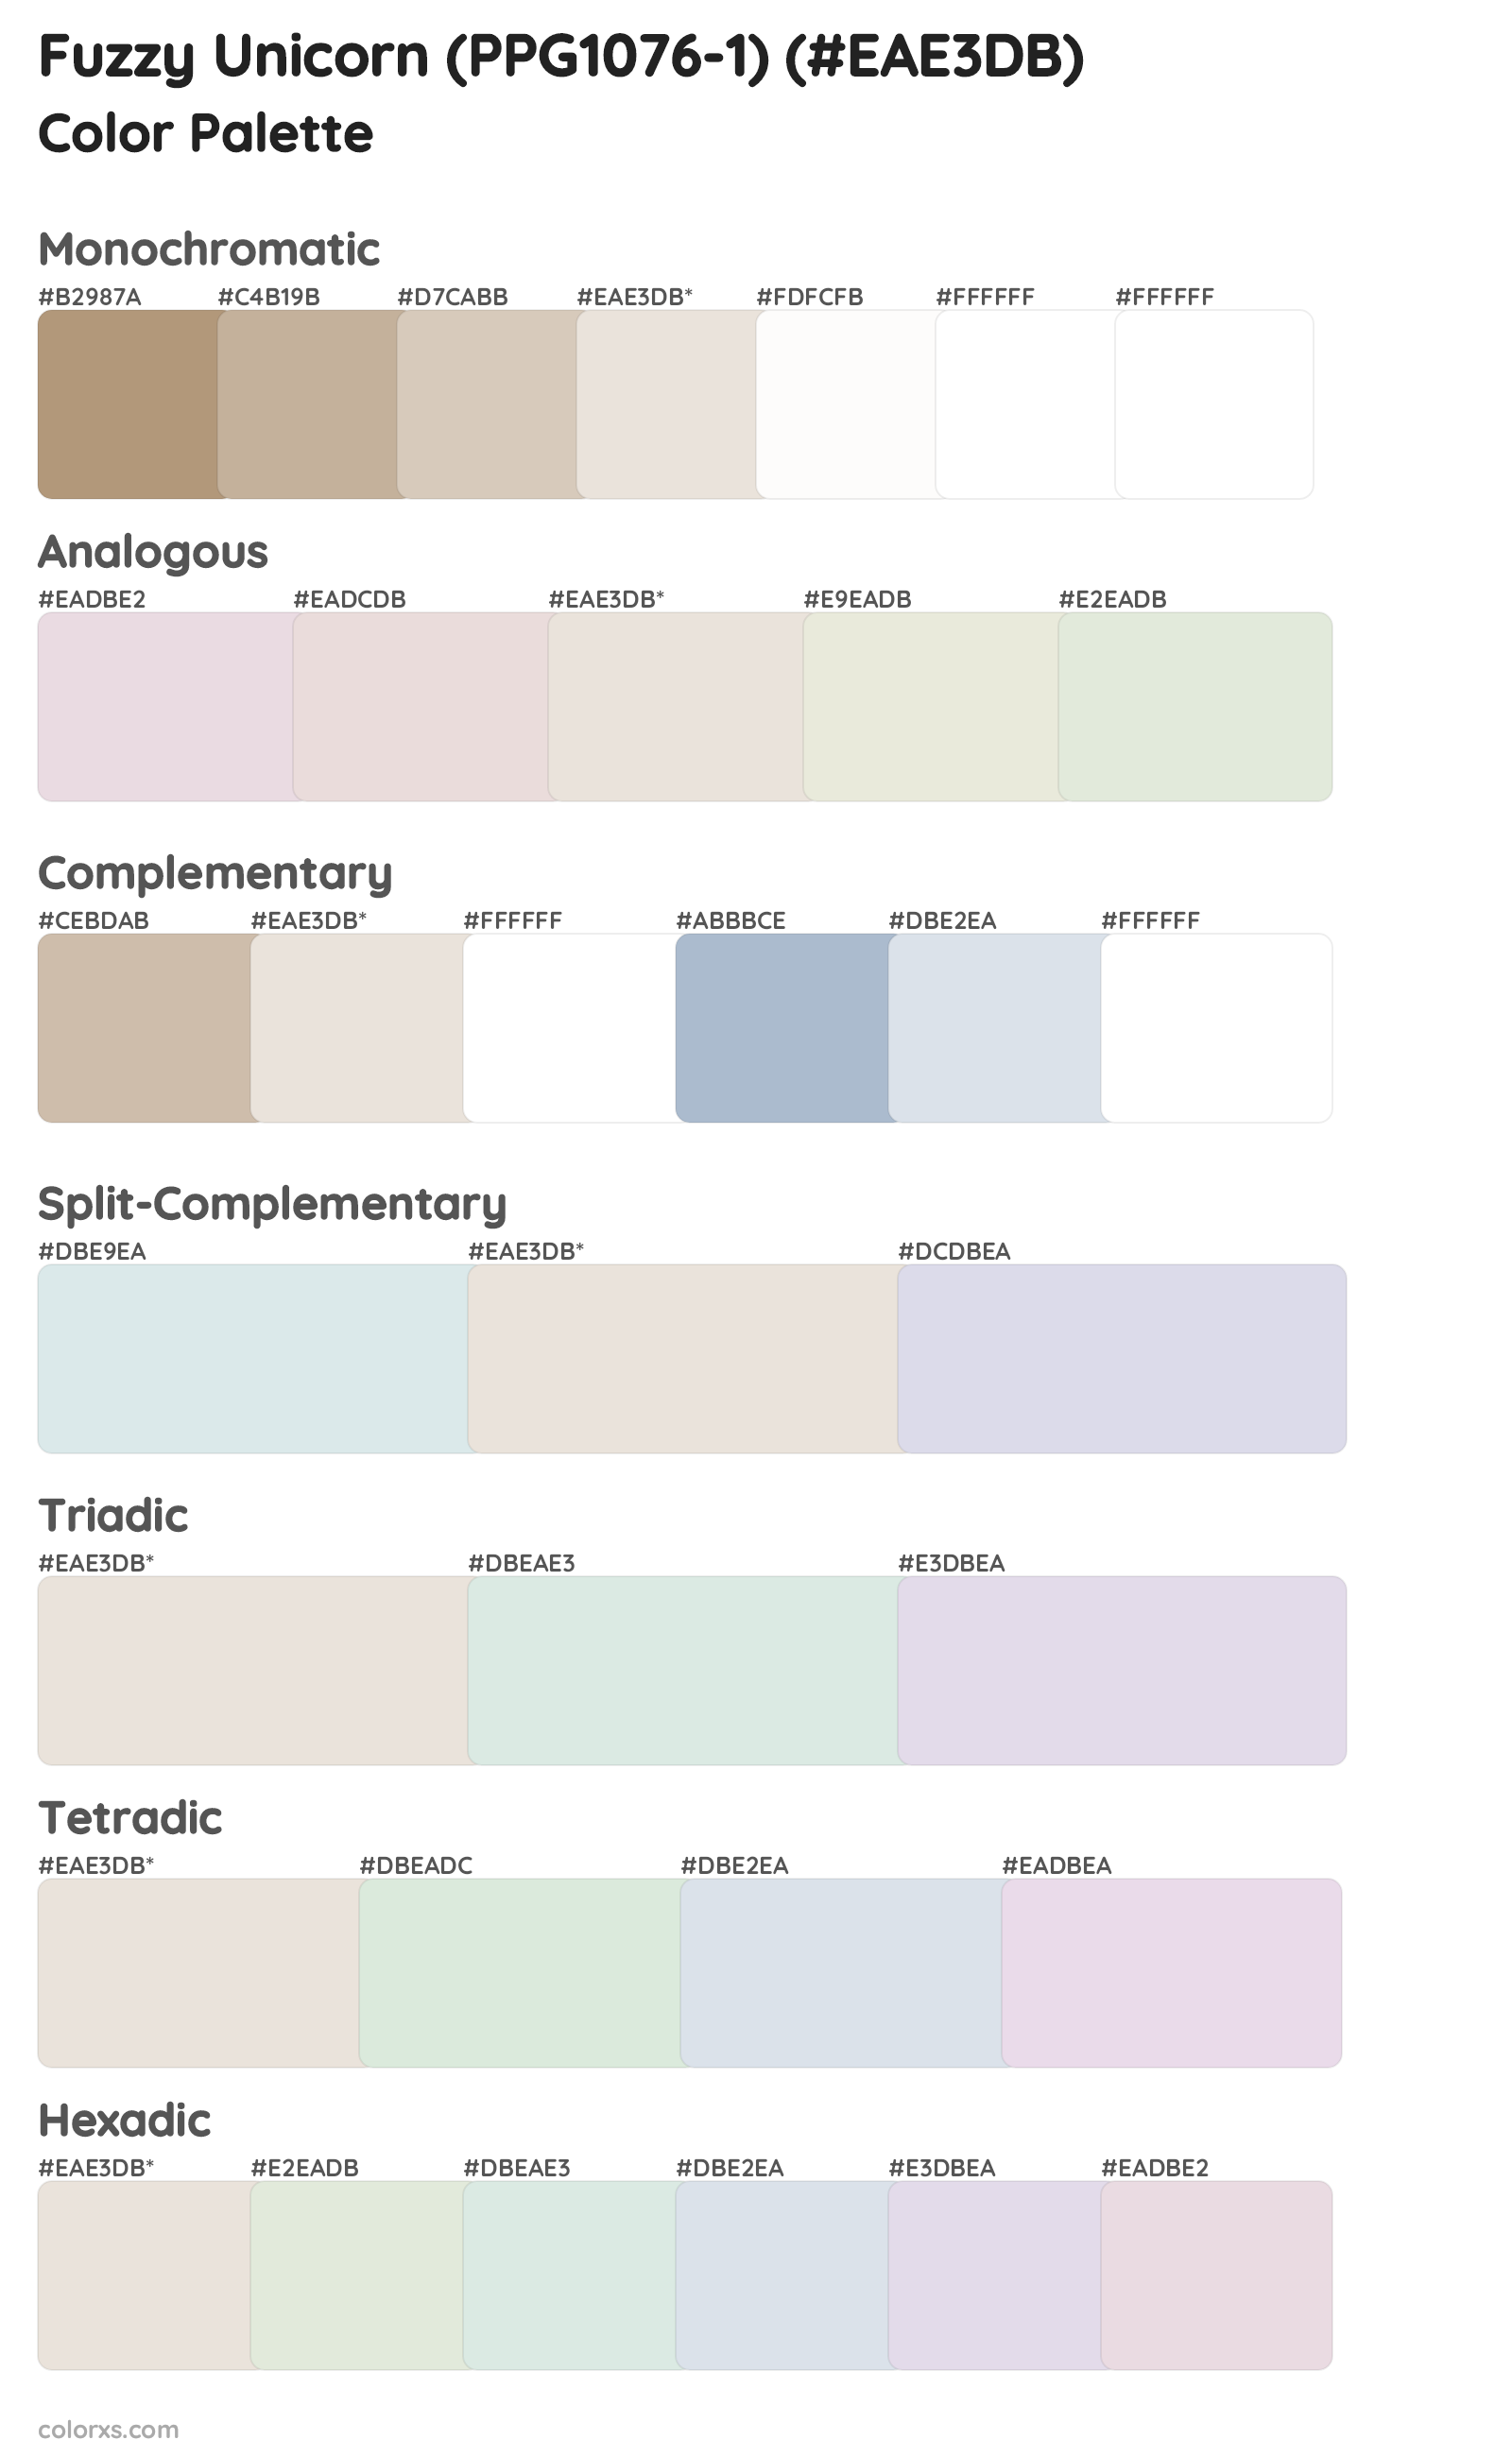 Fuzzy Unicorn (PPG1076-1) Color Scheme Palettes